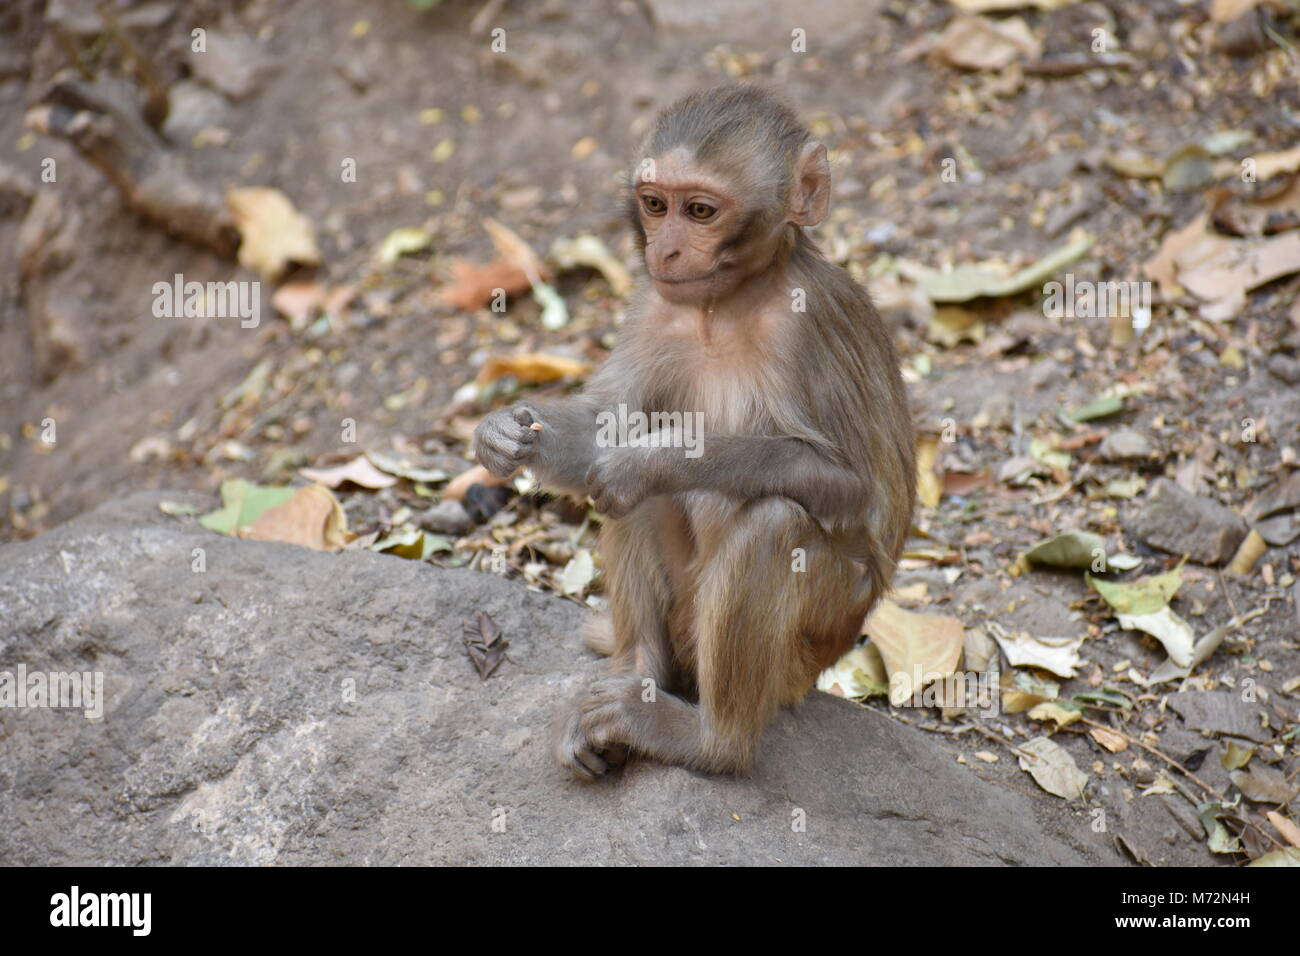 Super Snap von kleinen Affe, sitzt auf einem Stein & halten Sie sich selbst, indem sie kleine Tätigkeiten wie Essen Essen beschäftigt, siehe um ihn herum. Stockfoto